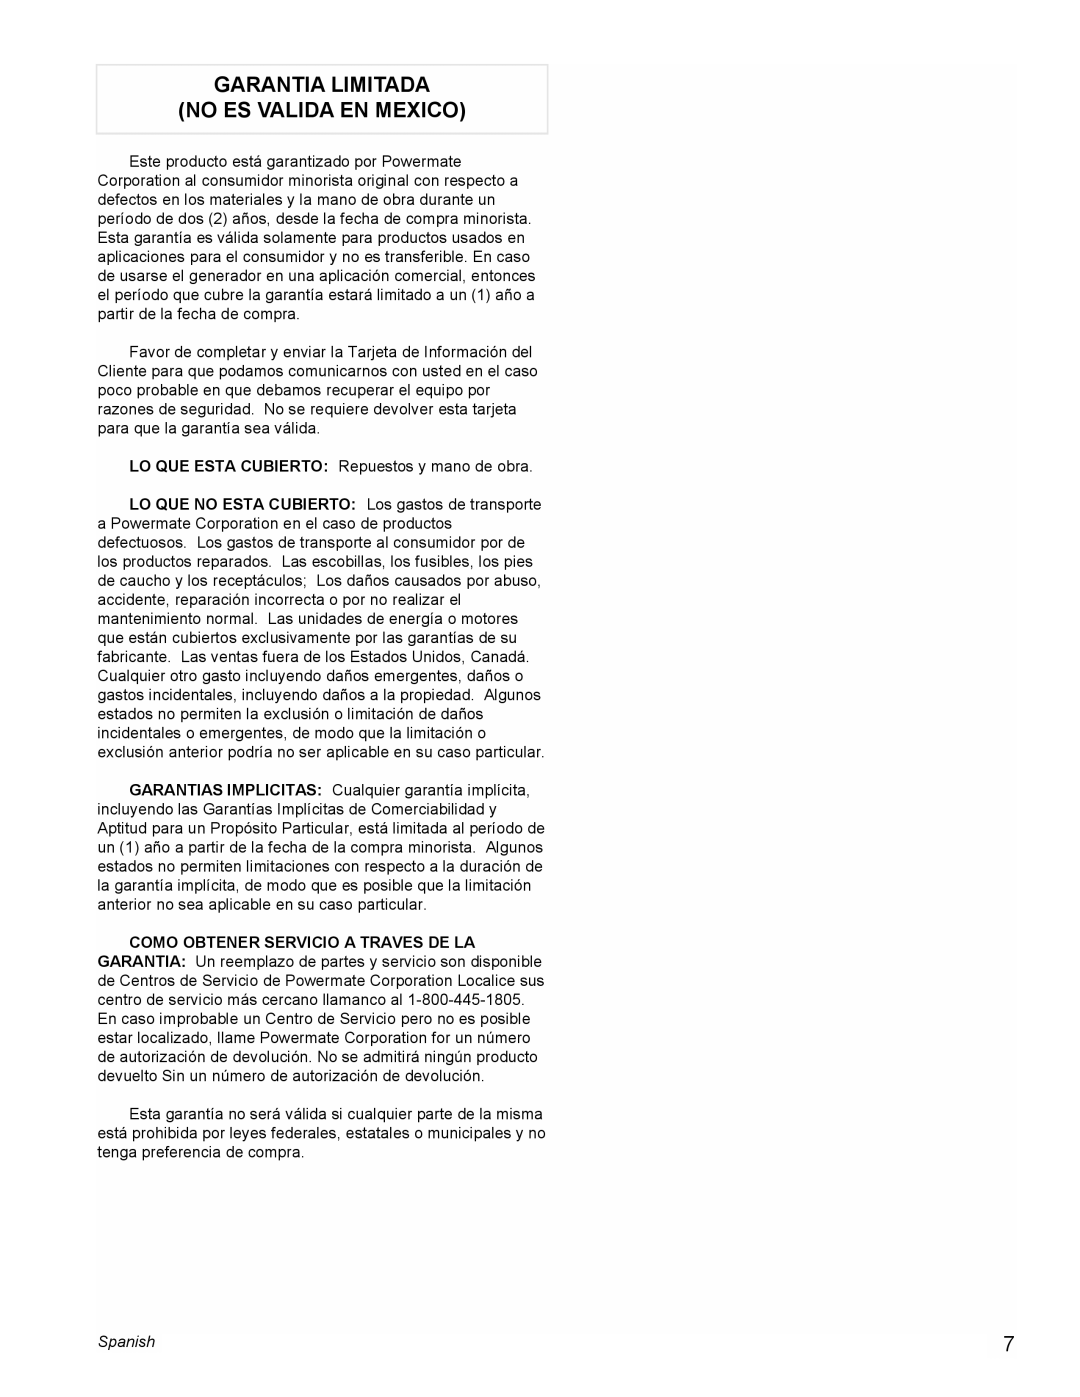 Powermate PM0401857 manual Garantia Limitada No Es Valida En Mexico, Spanish 